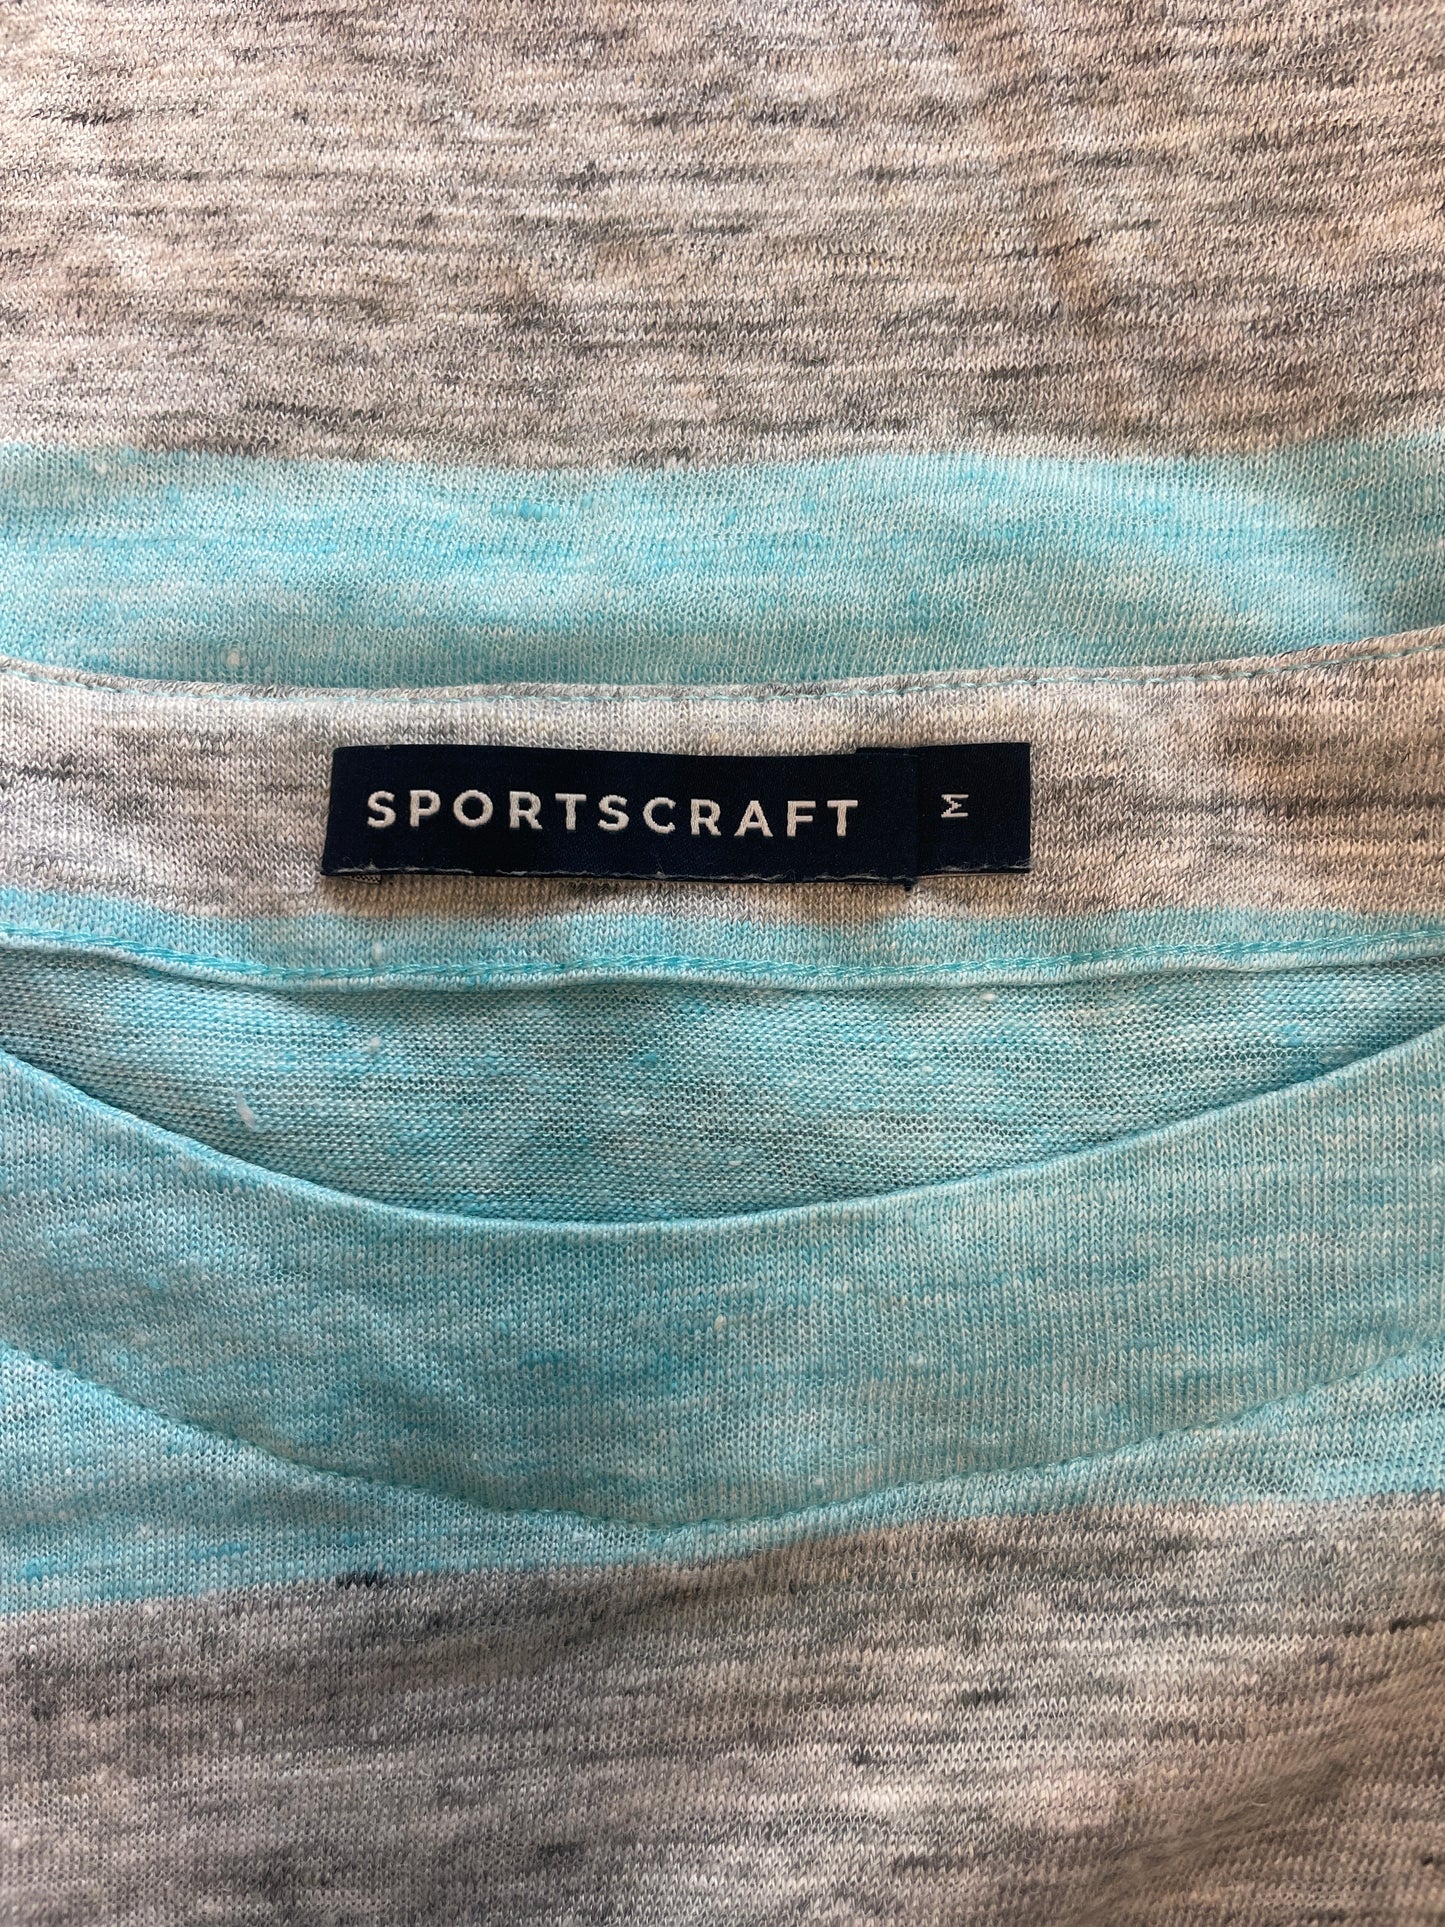 Sportscraft | top | size 12 | long sleeve | 100% linen